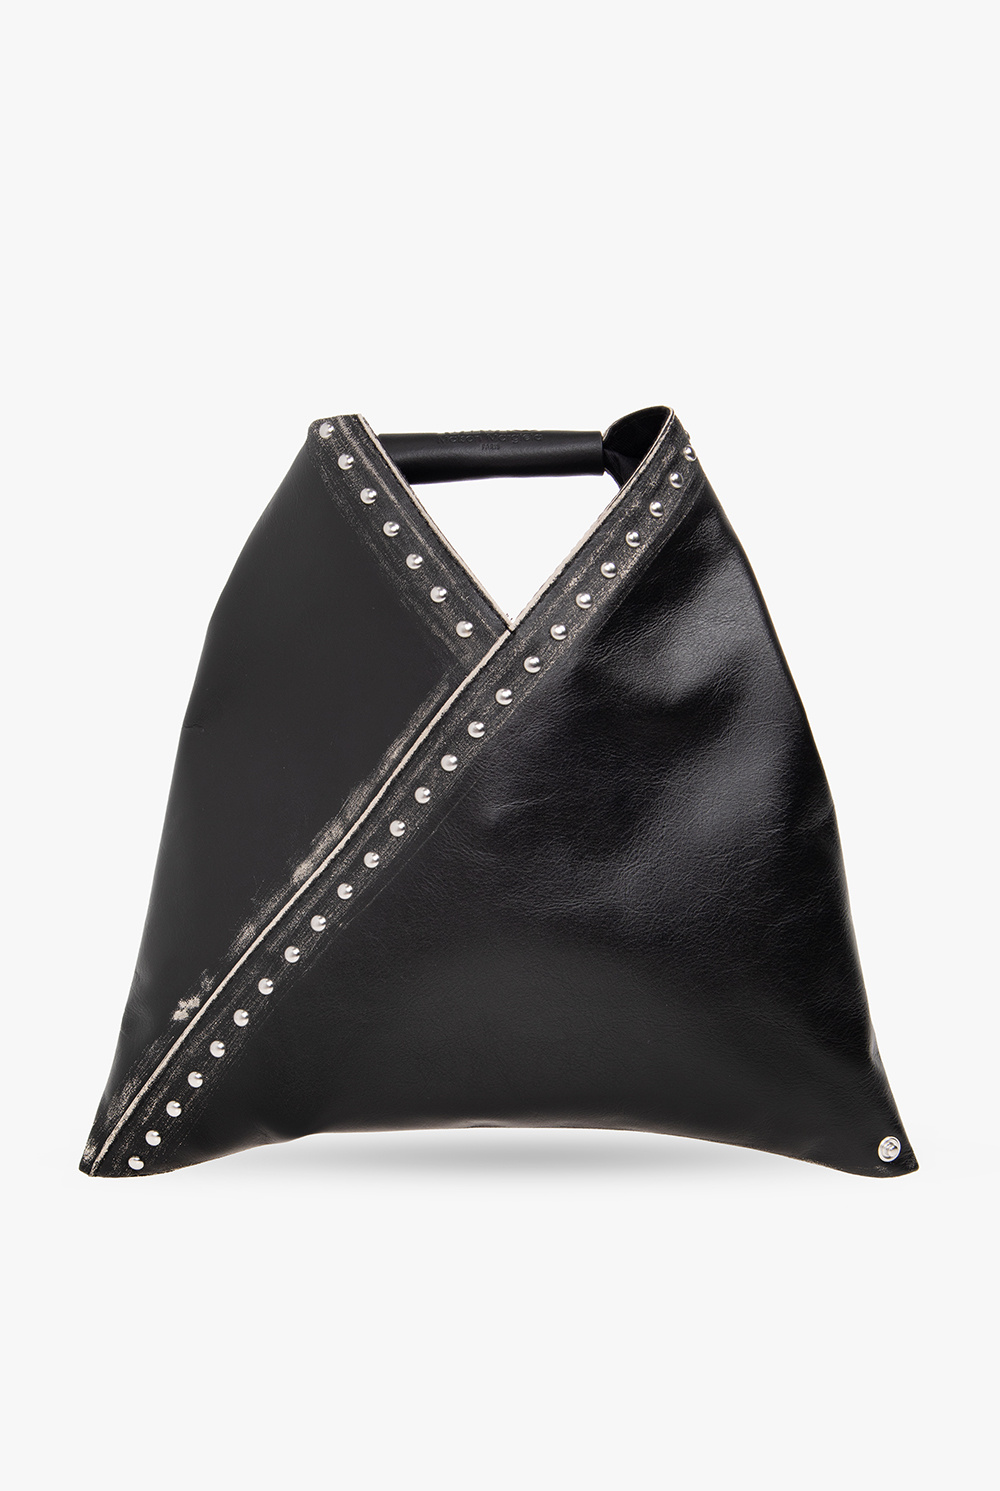 Black 'Japanese' handbag MM6 Maison Margiela - GenesinlifeShops